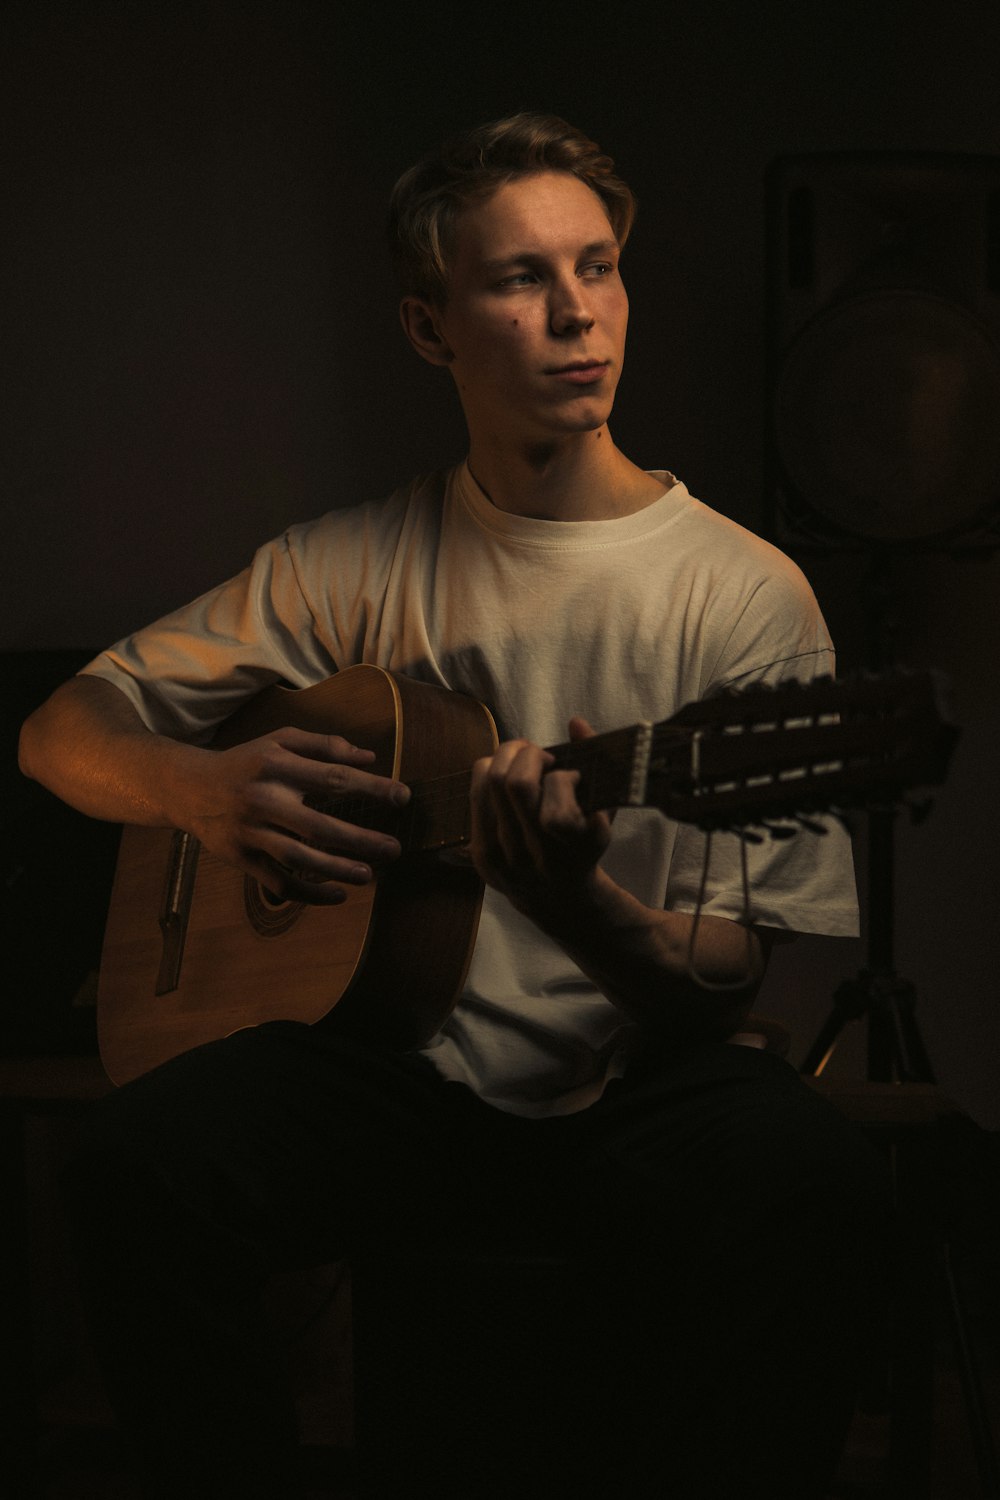 Un uomo che suona una chitarra in una stanza buia